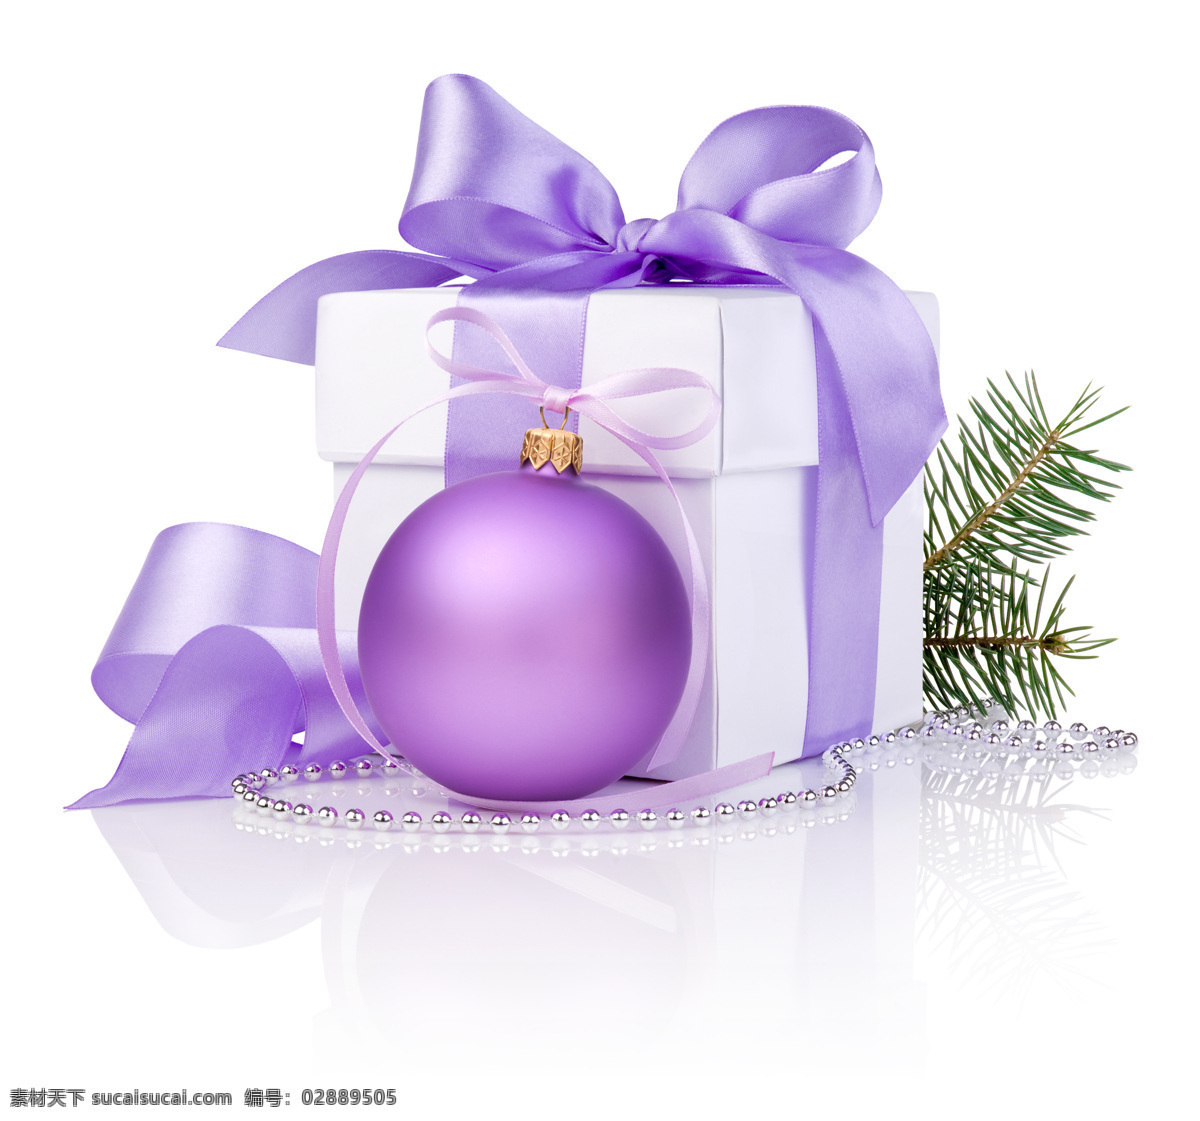 紫色 吊球 礼物 圣诞球 新年 圣诞节 假日 雪花 圣诞礼物 礼盒 节日背景 节日素材 节日庆典 生活百科